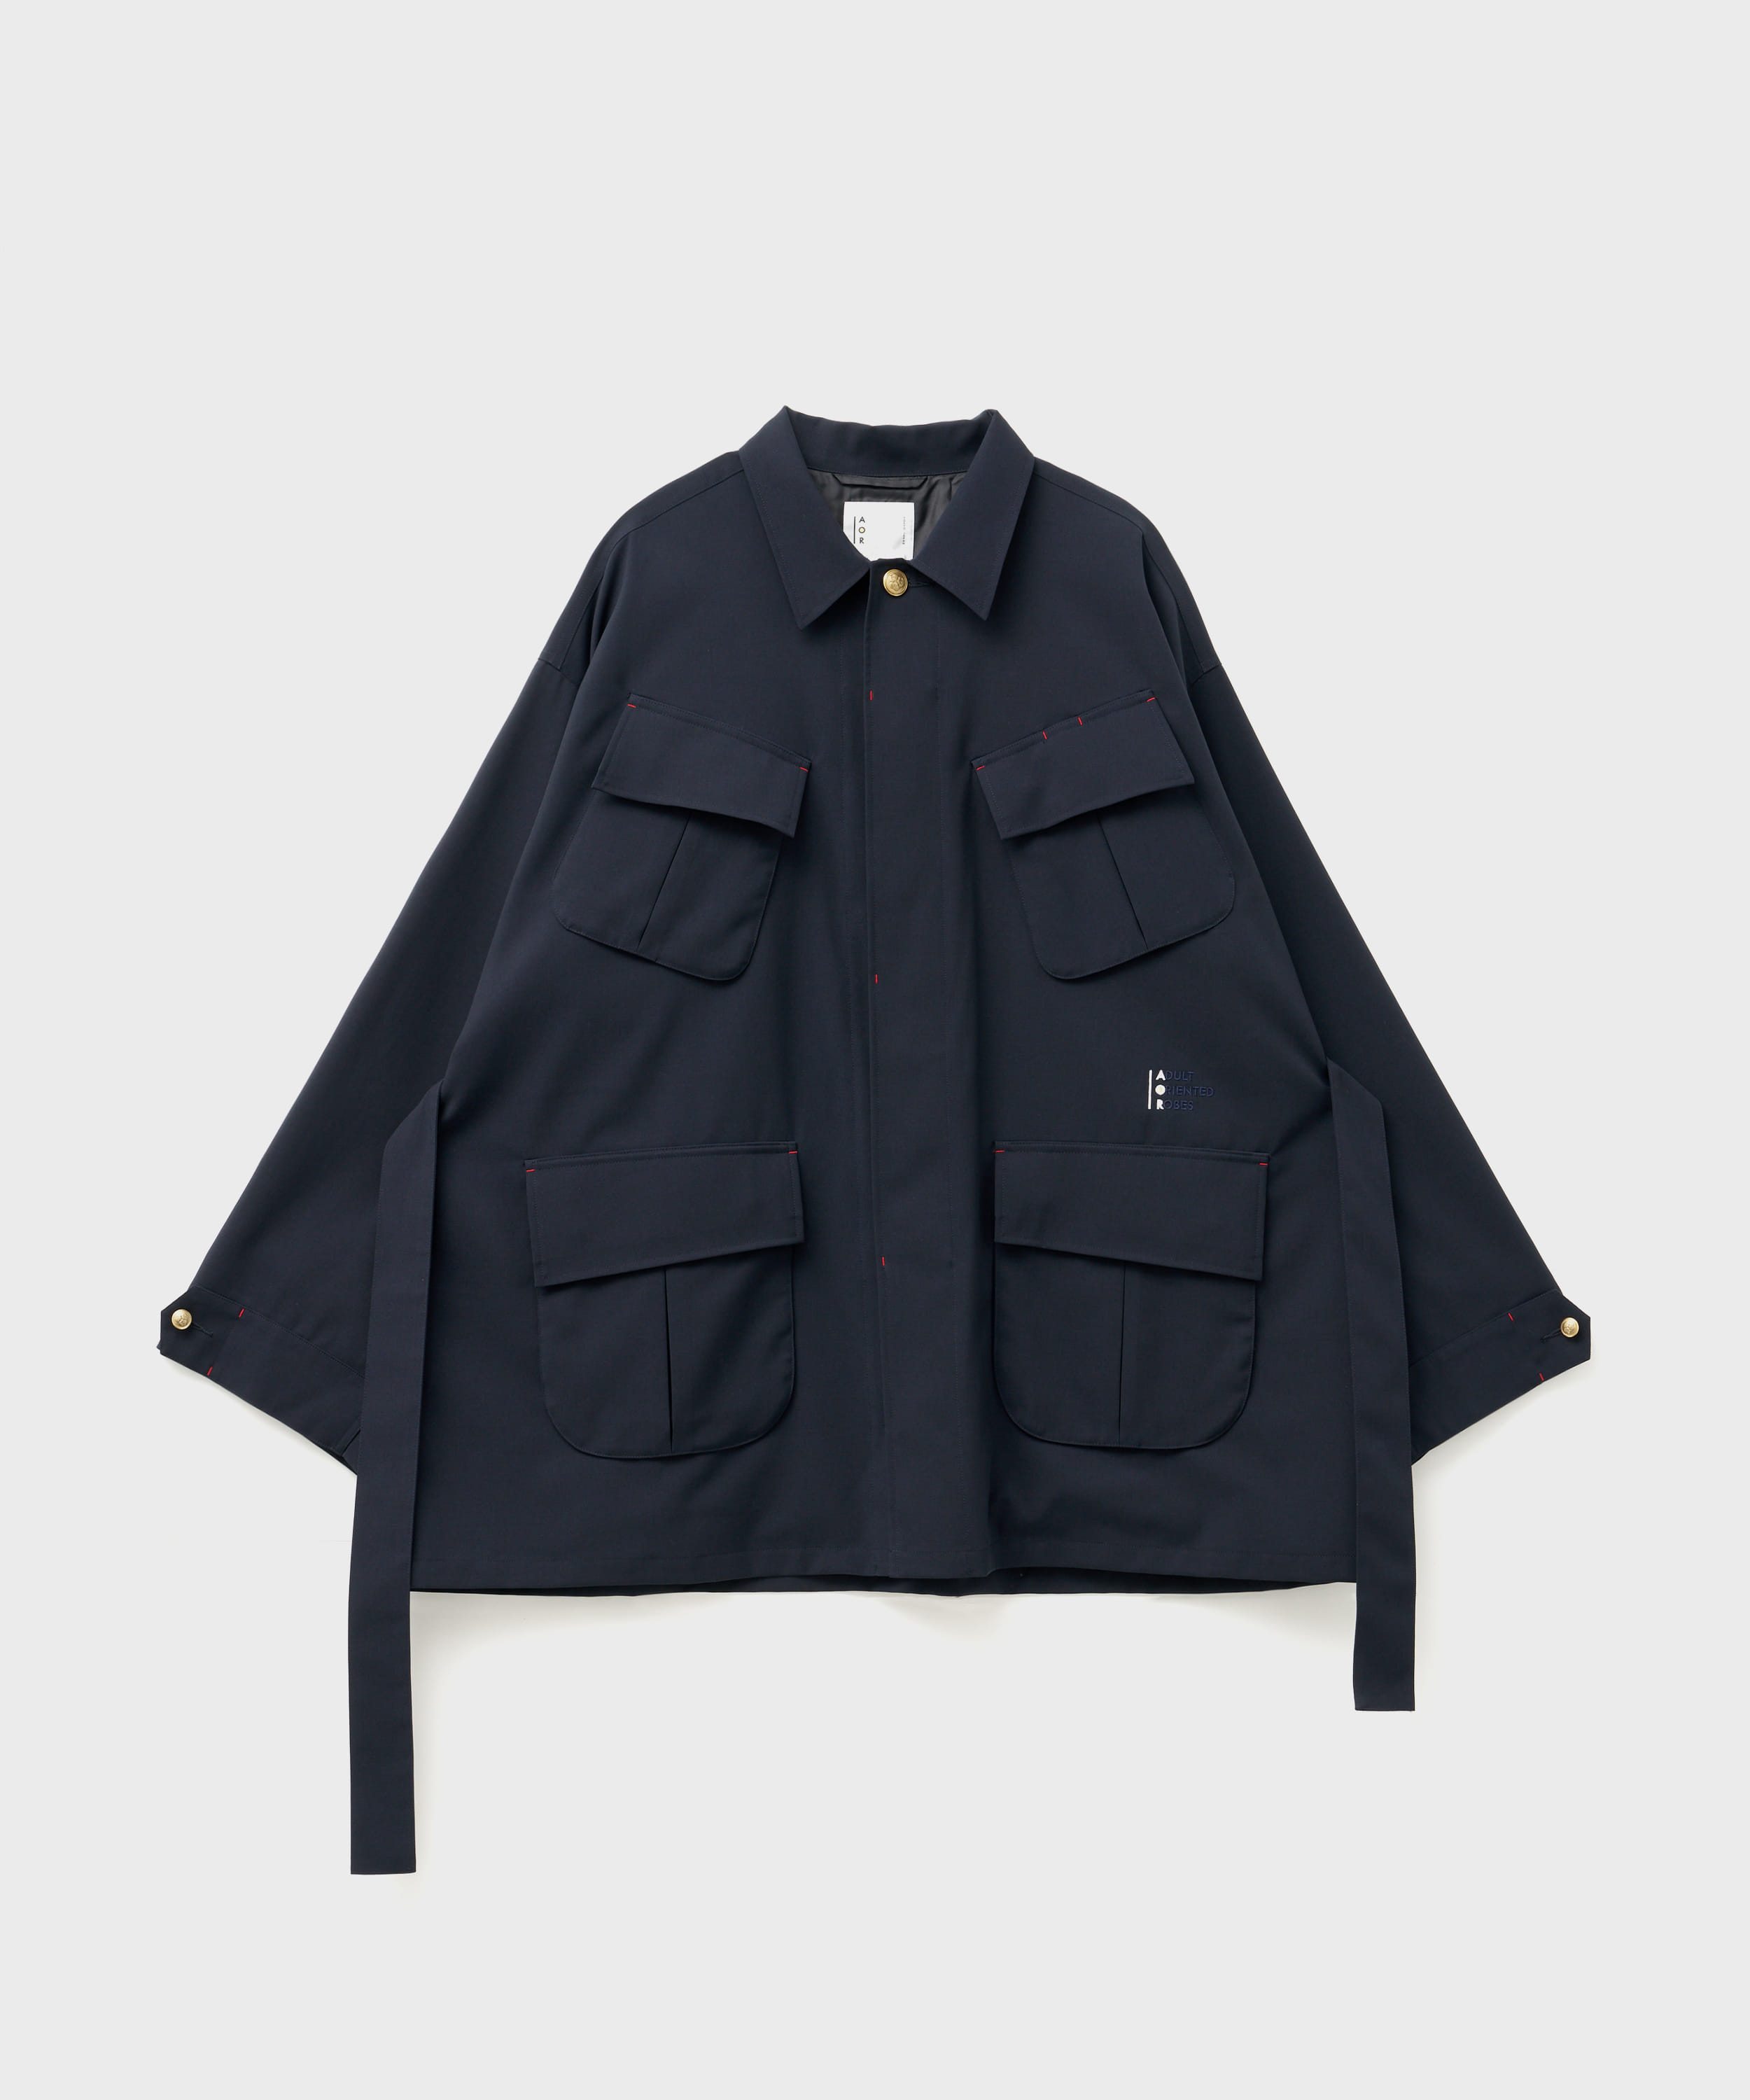 Bluebells Jacket (Navy)